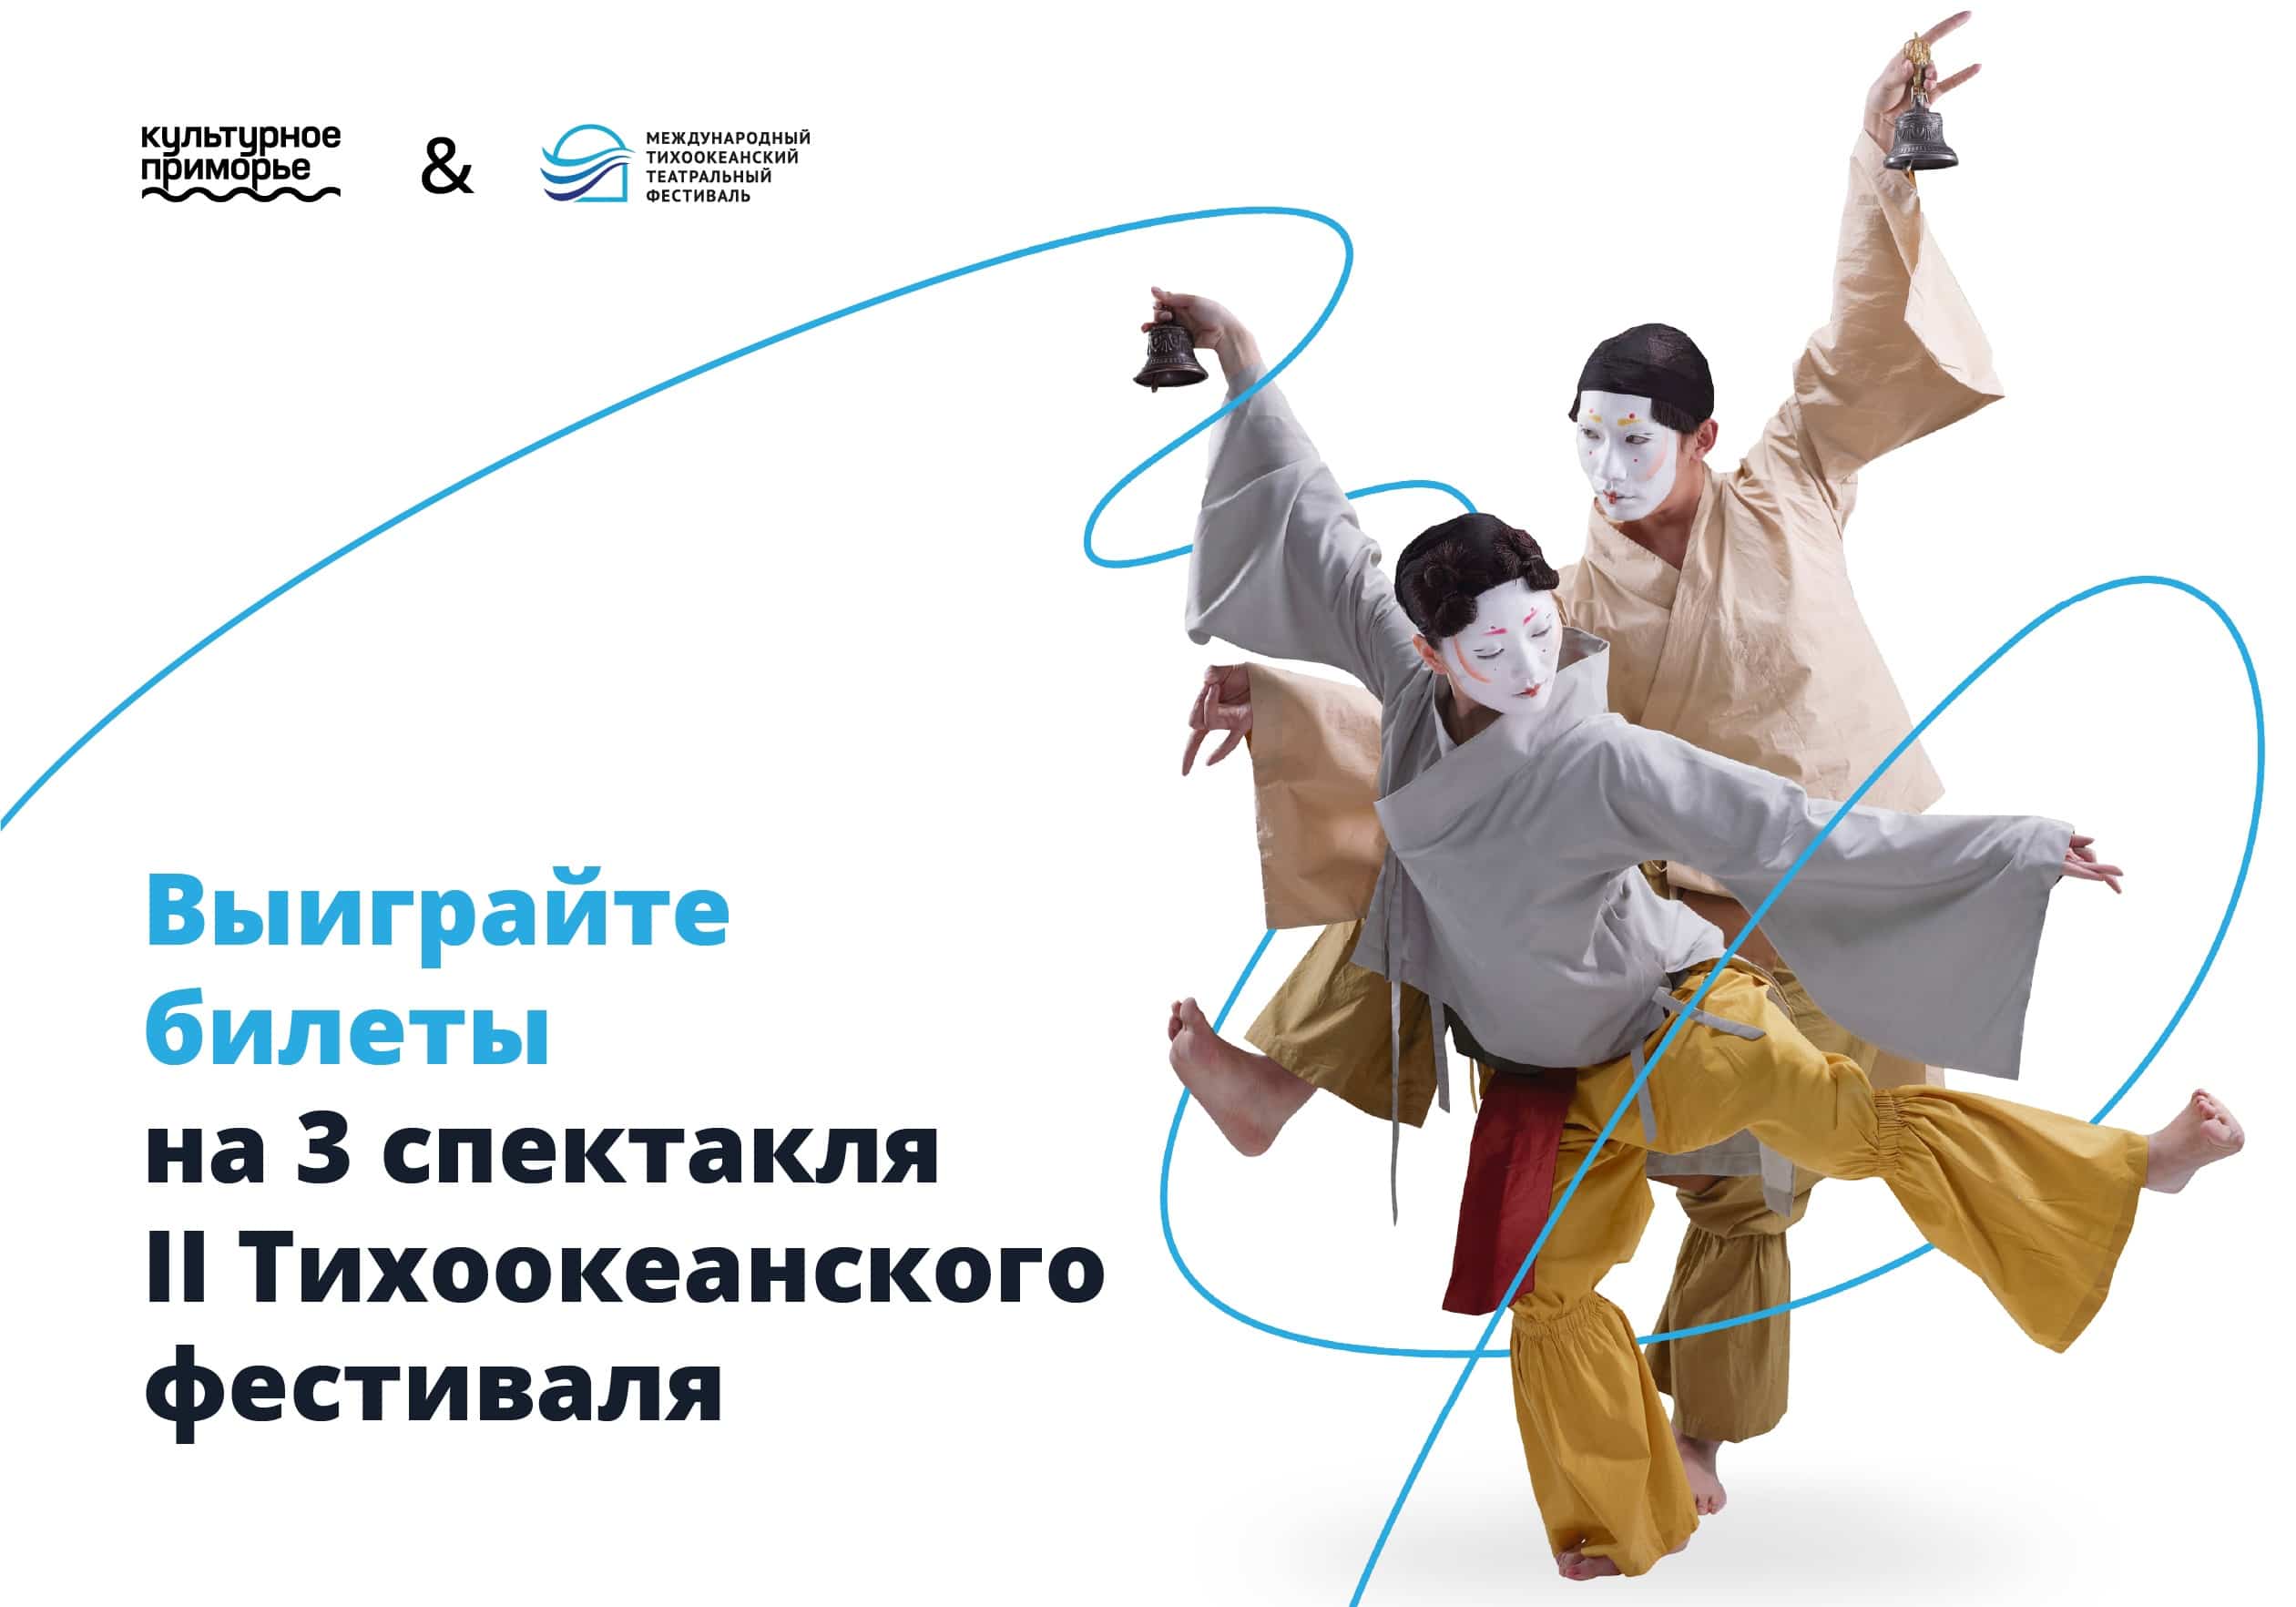 II Международный Тихоокеанский театральный фестиваль во Владивостоке